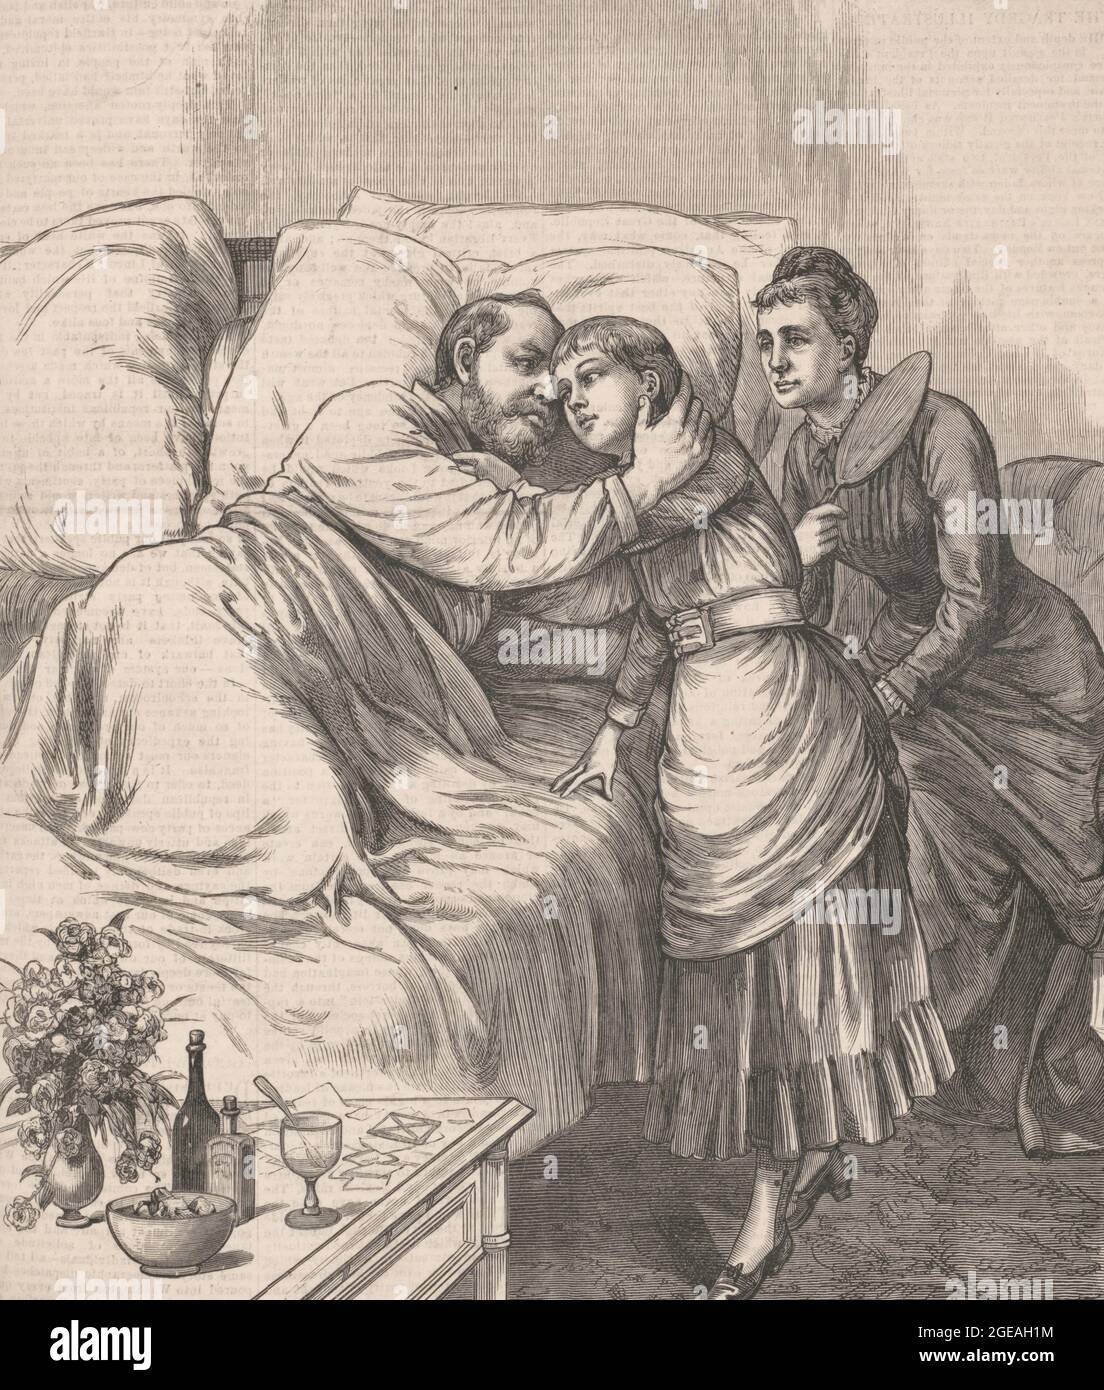 Der Attentat auf den Präsidenten - ein Morgengruß von Frau und Tochter des Präsidenten - zeigt auf der Druckansicht Präsident Garfield nach einem Attentat während des Besuchs seiner Frau und Tochter im Bett liegend - am 23. Juli 1881 Stockfoto